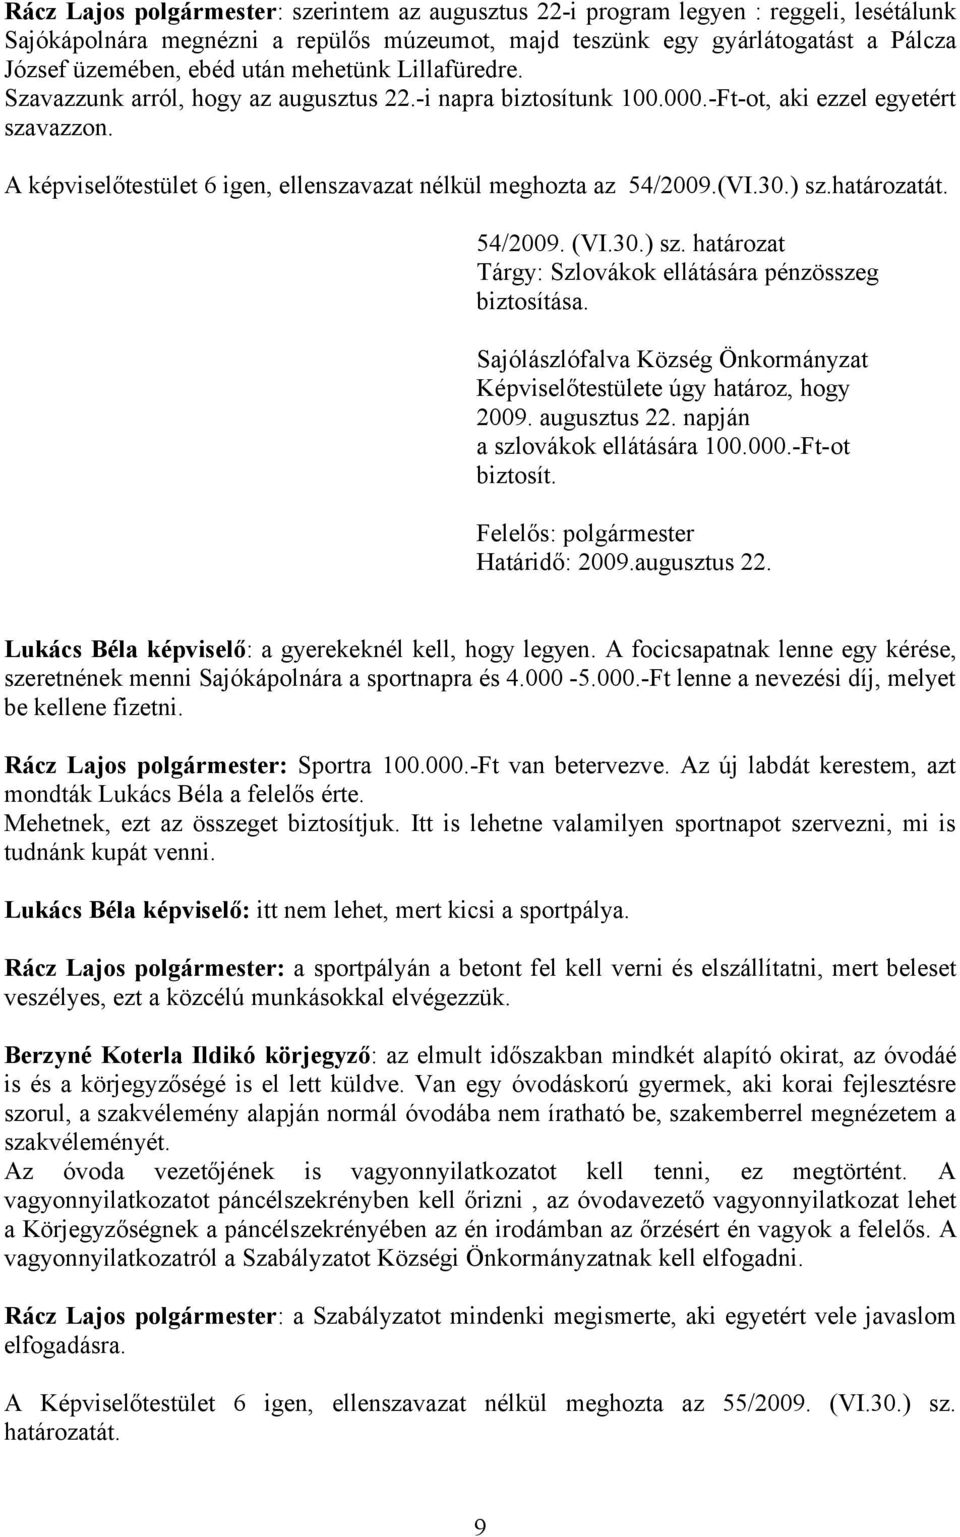 A képviselőtestület 6 igen, ellenszavazat nélkül meghozta az 54/2009.(VI.30.) sz.határozatát. 54/2009. (VI.30.) sz. határozat Tárgy: Szlovákok ellátására pénzösszeg biztosítása. 2009. augusztus 22.